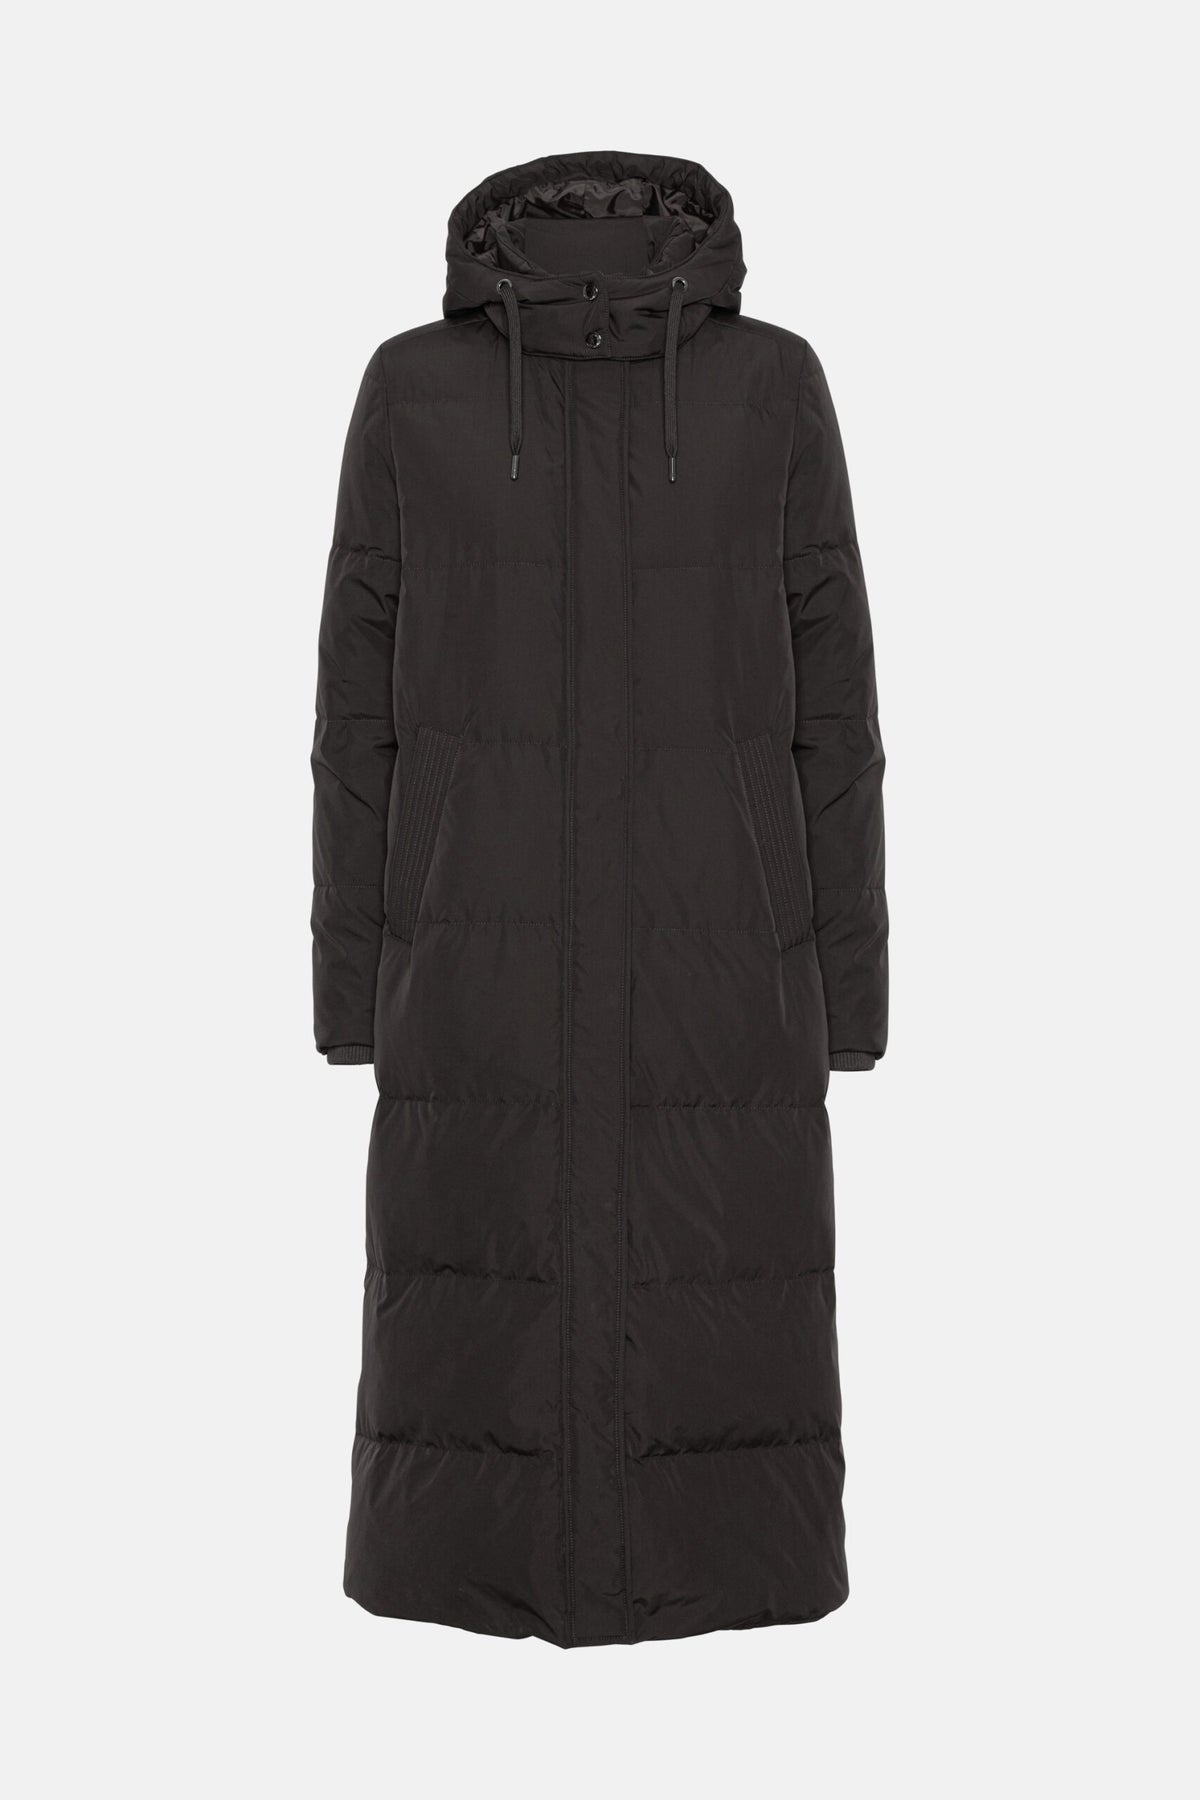 Ilse Jacobsen Peppy Full Length Coat Jacket